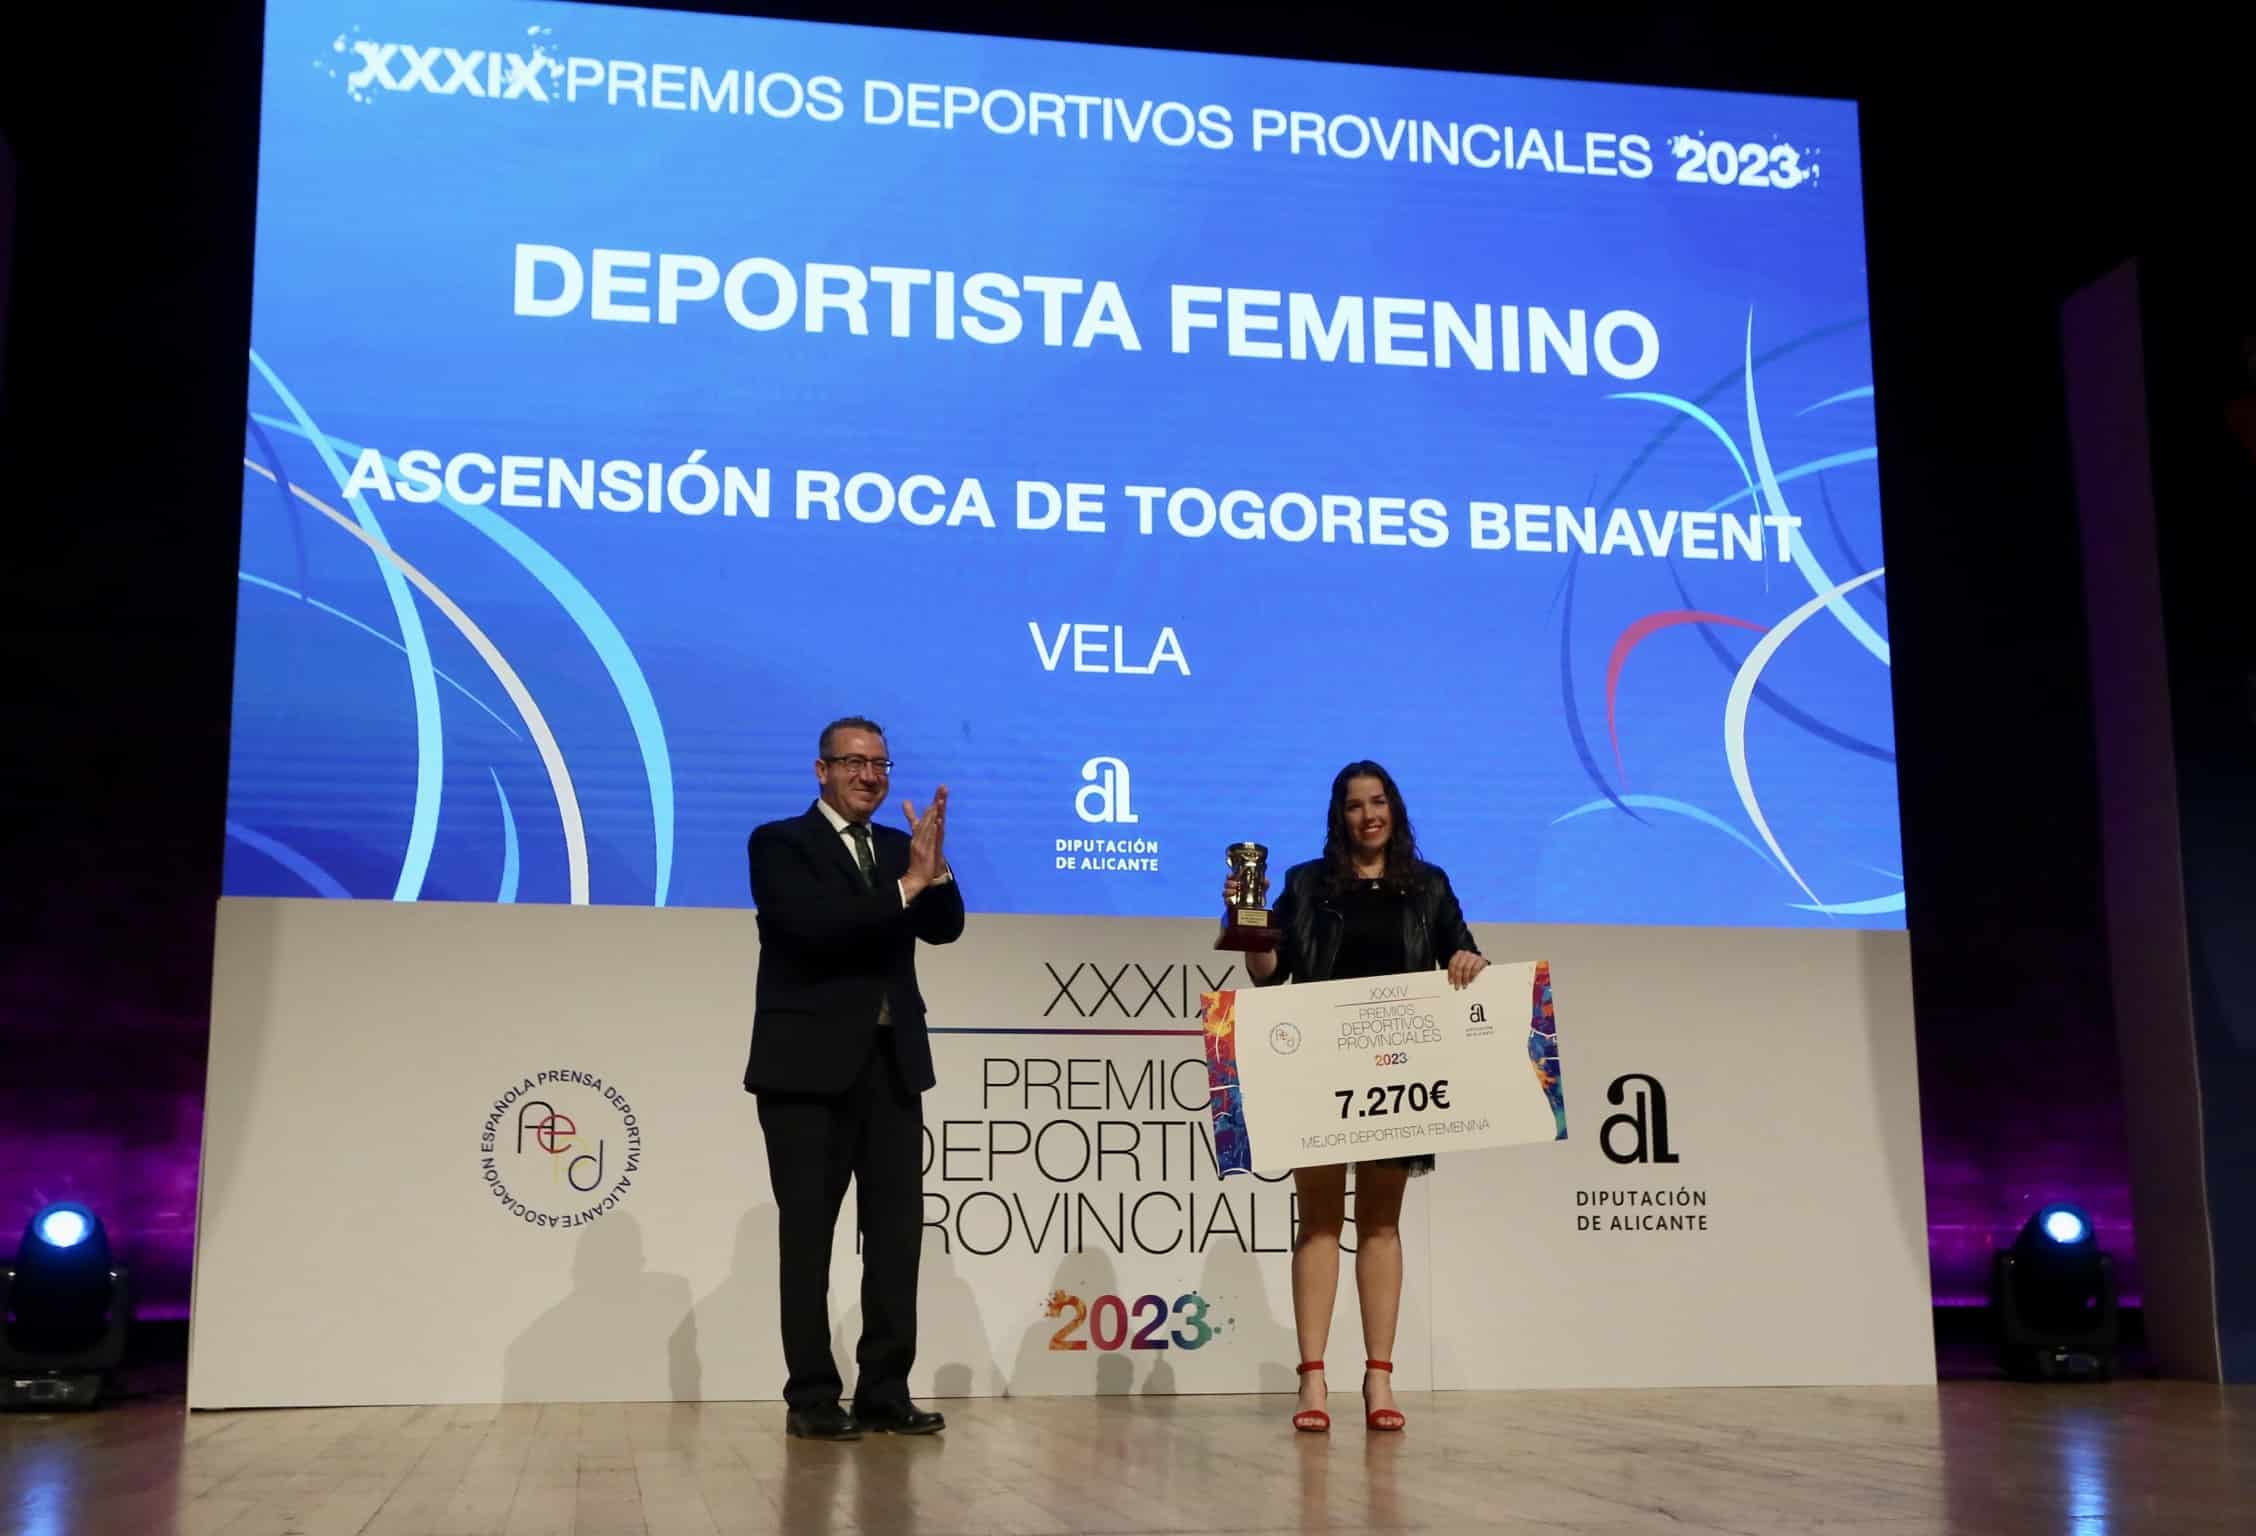 La regatista Ascensión Roca de Togores y el ciclista Felipe Orts, Mejores Deportistas de la Provincia de 2022